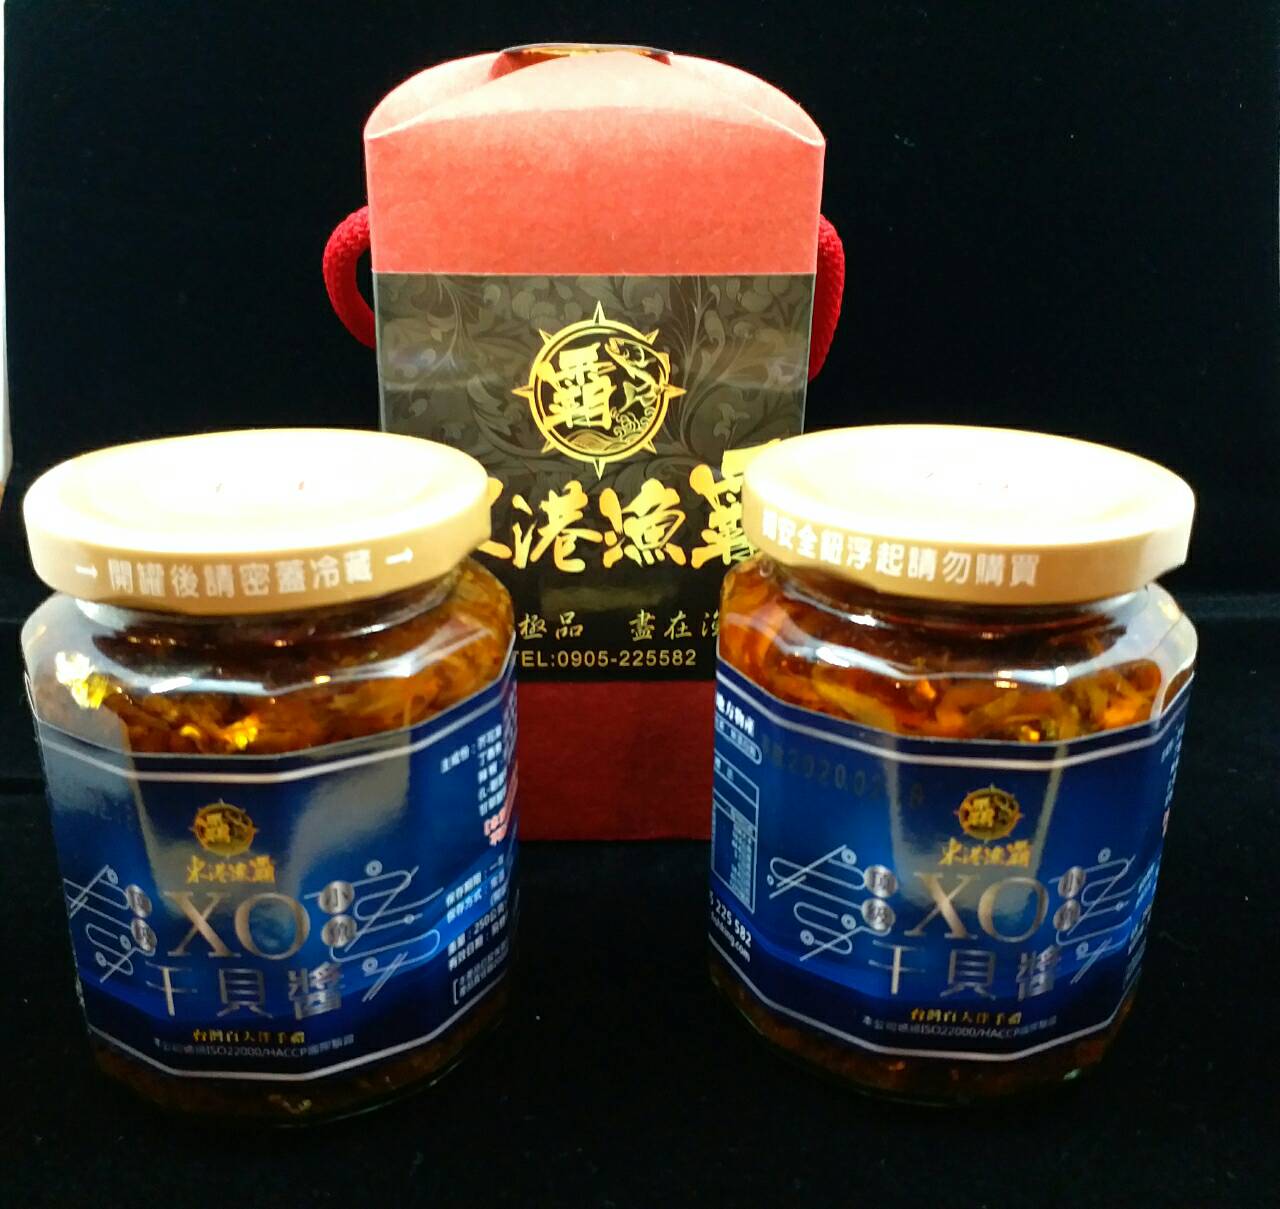 【東港漁霸】雙罐頂級XO小魚干貝醬(限時優惠價) / 海鮮醬 / 烏魚子 / 禮盒